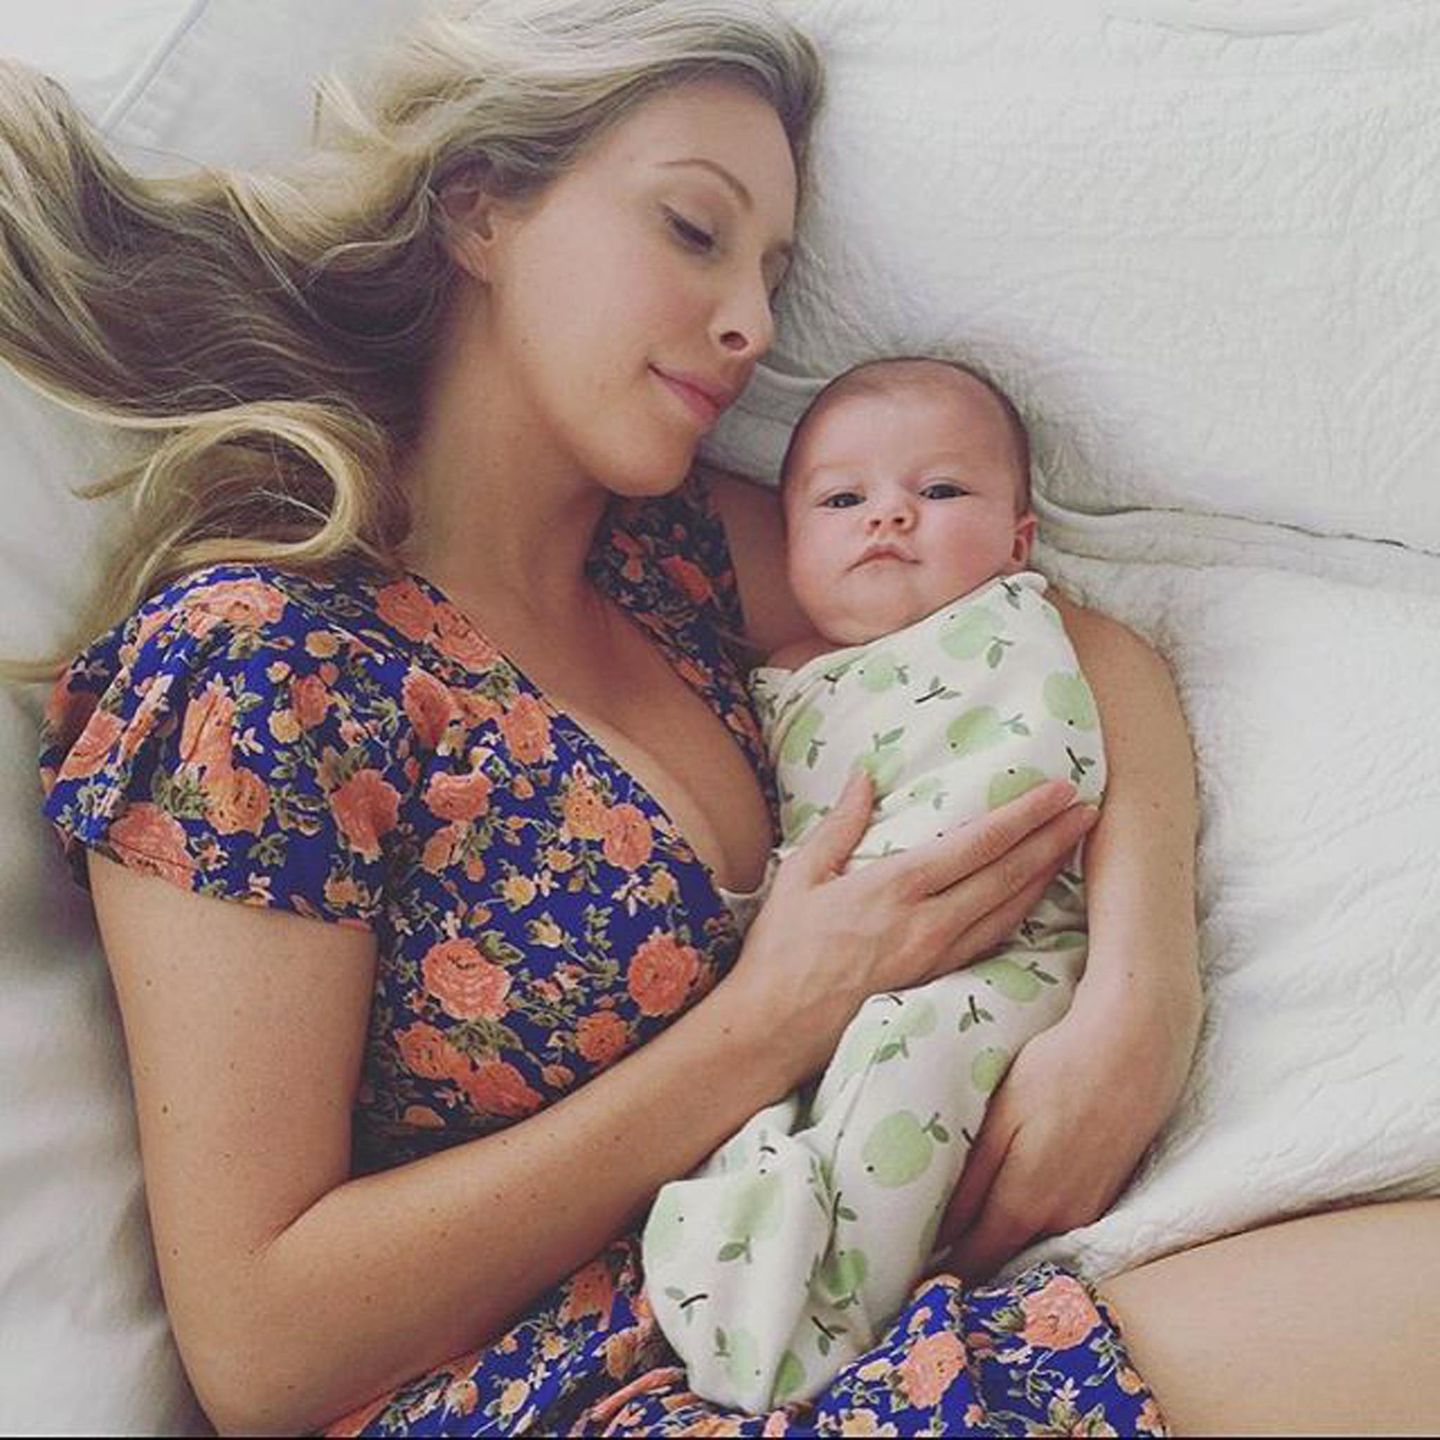 September 2015: Leah Jenner teilt den ersten Blick auf ihr neun Wochen altes Töchterchen Eva James bei Instagram. "Es ist eine Ehre, Kleines", schreibt die Ehefrau von Caitlyn Jenners Sohn Brandon zu dem Bild.